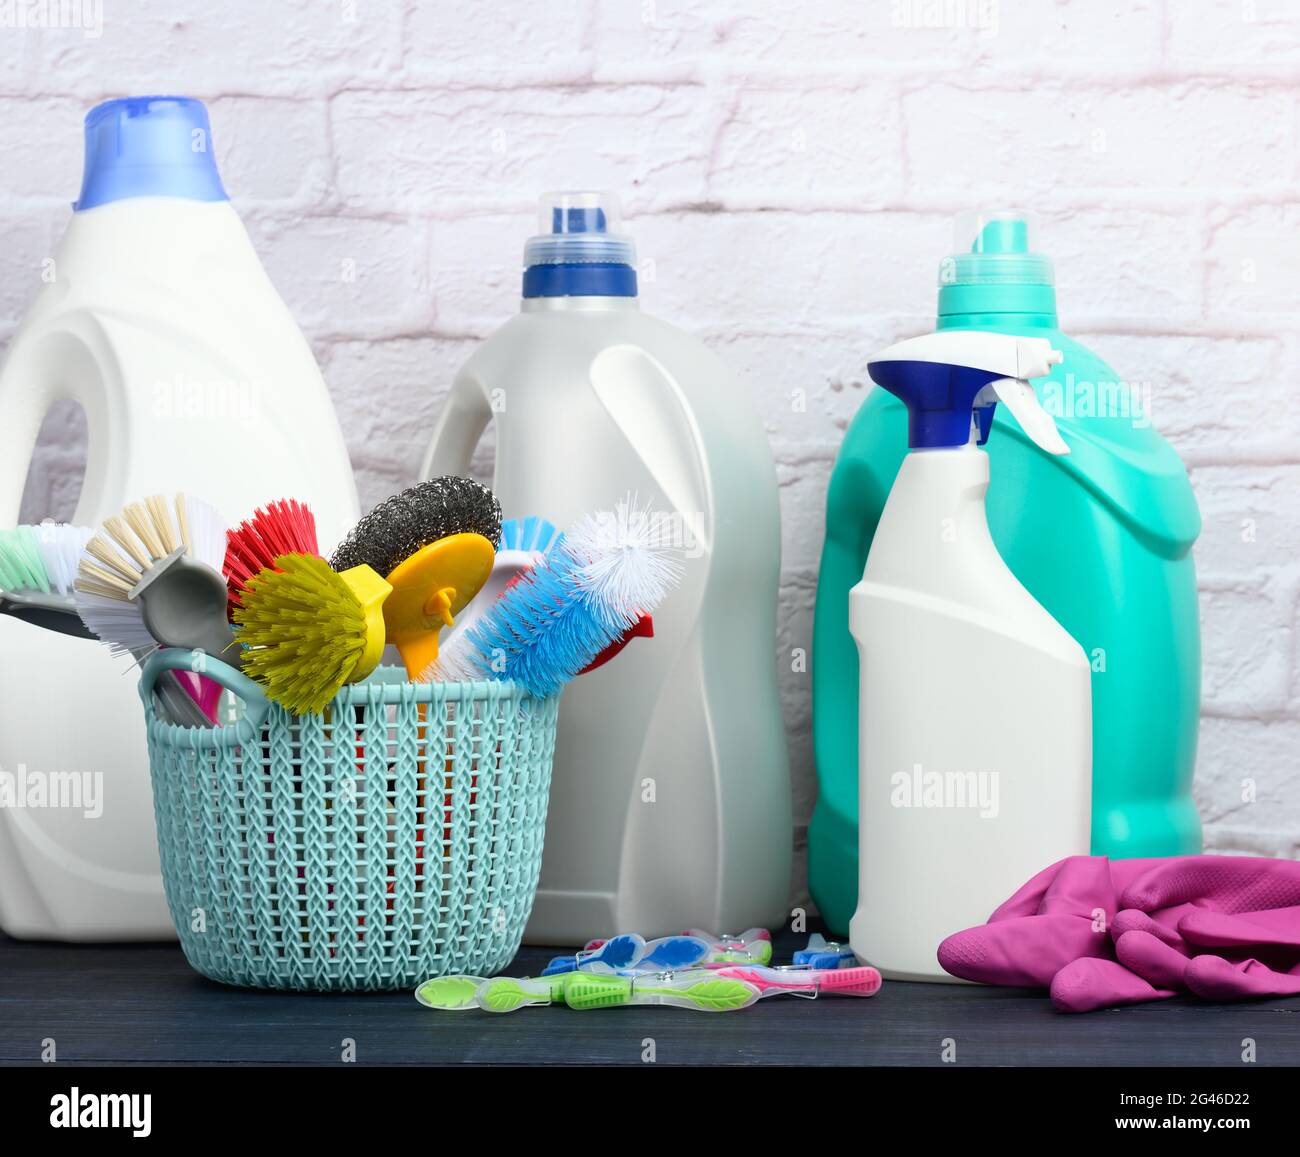 Cesta de productos y limpieza con suministros de cepillo o detergente en  una superficie de mesa